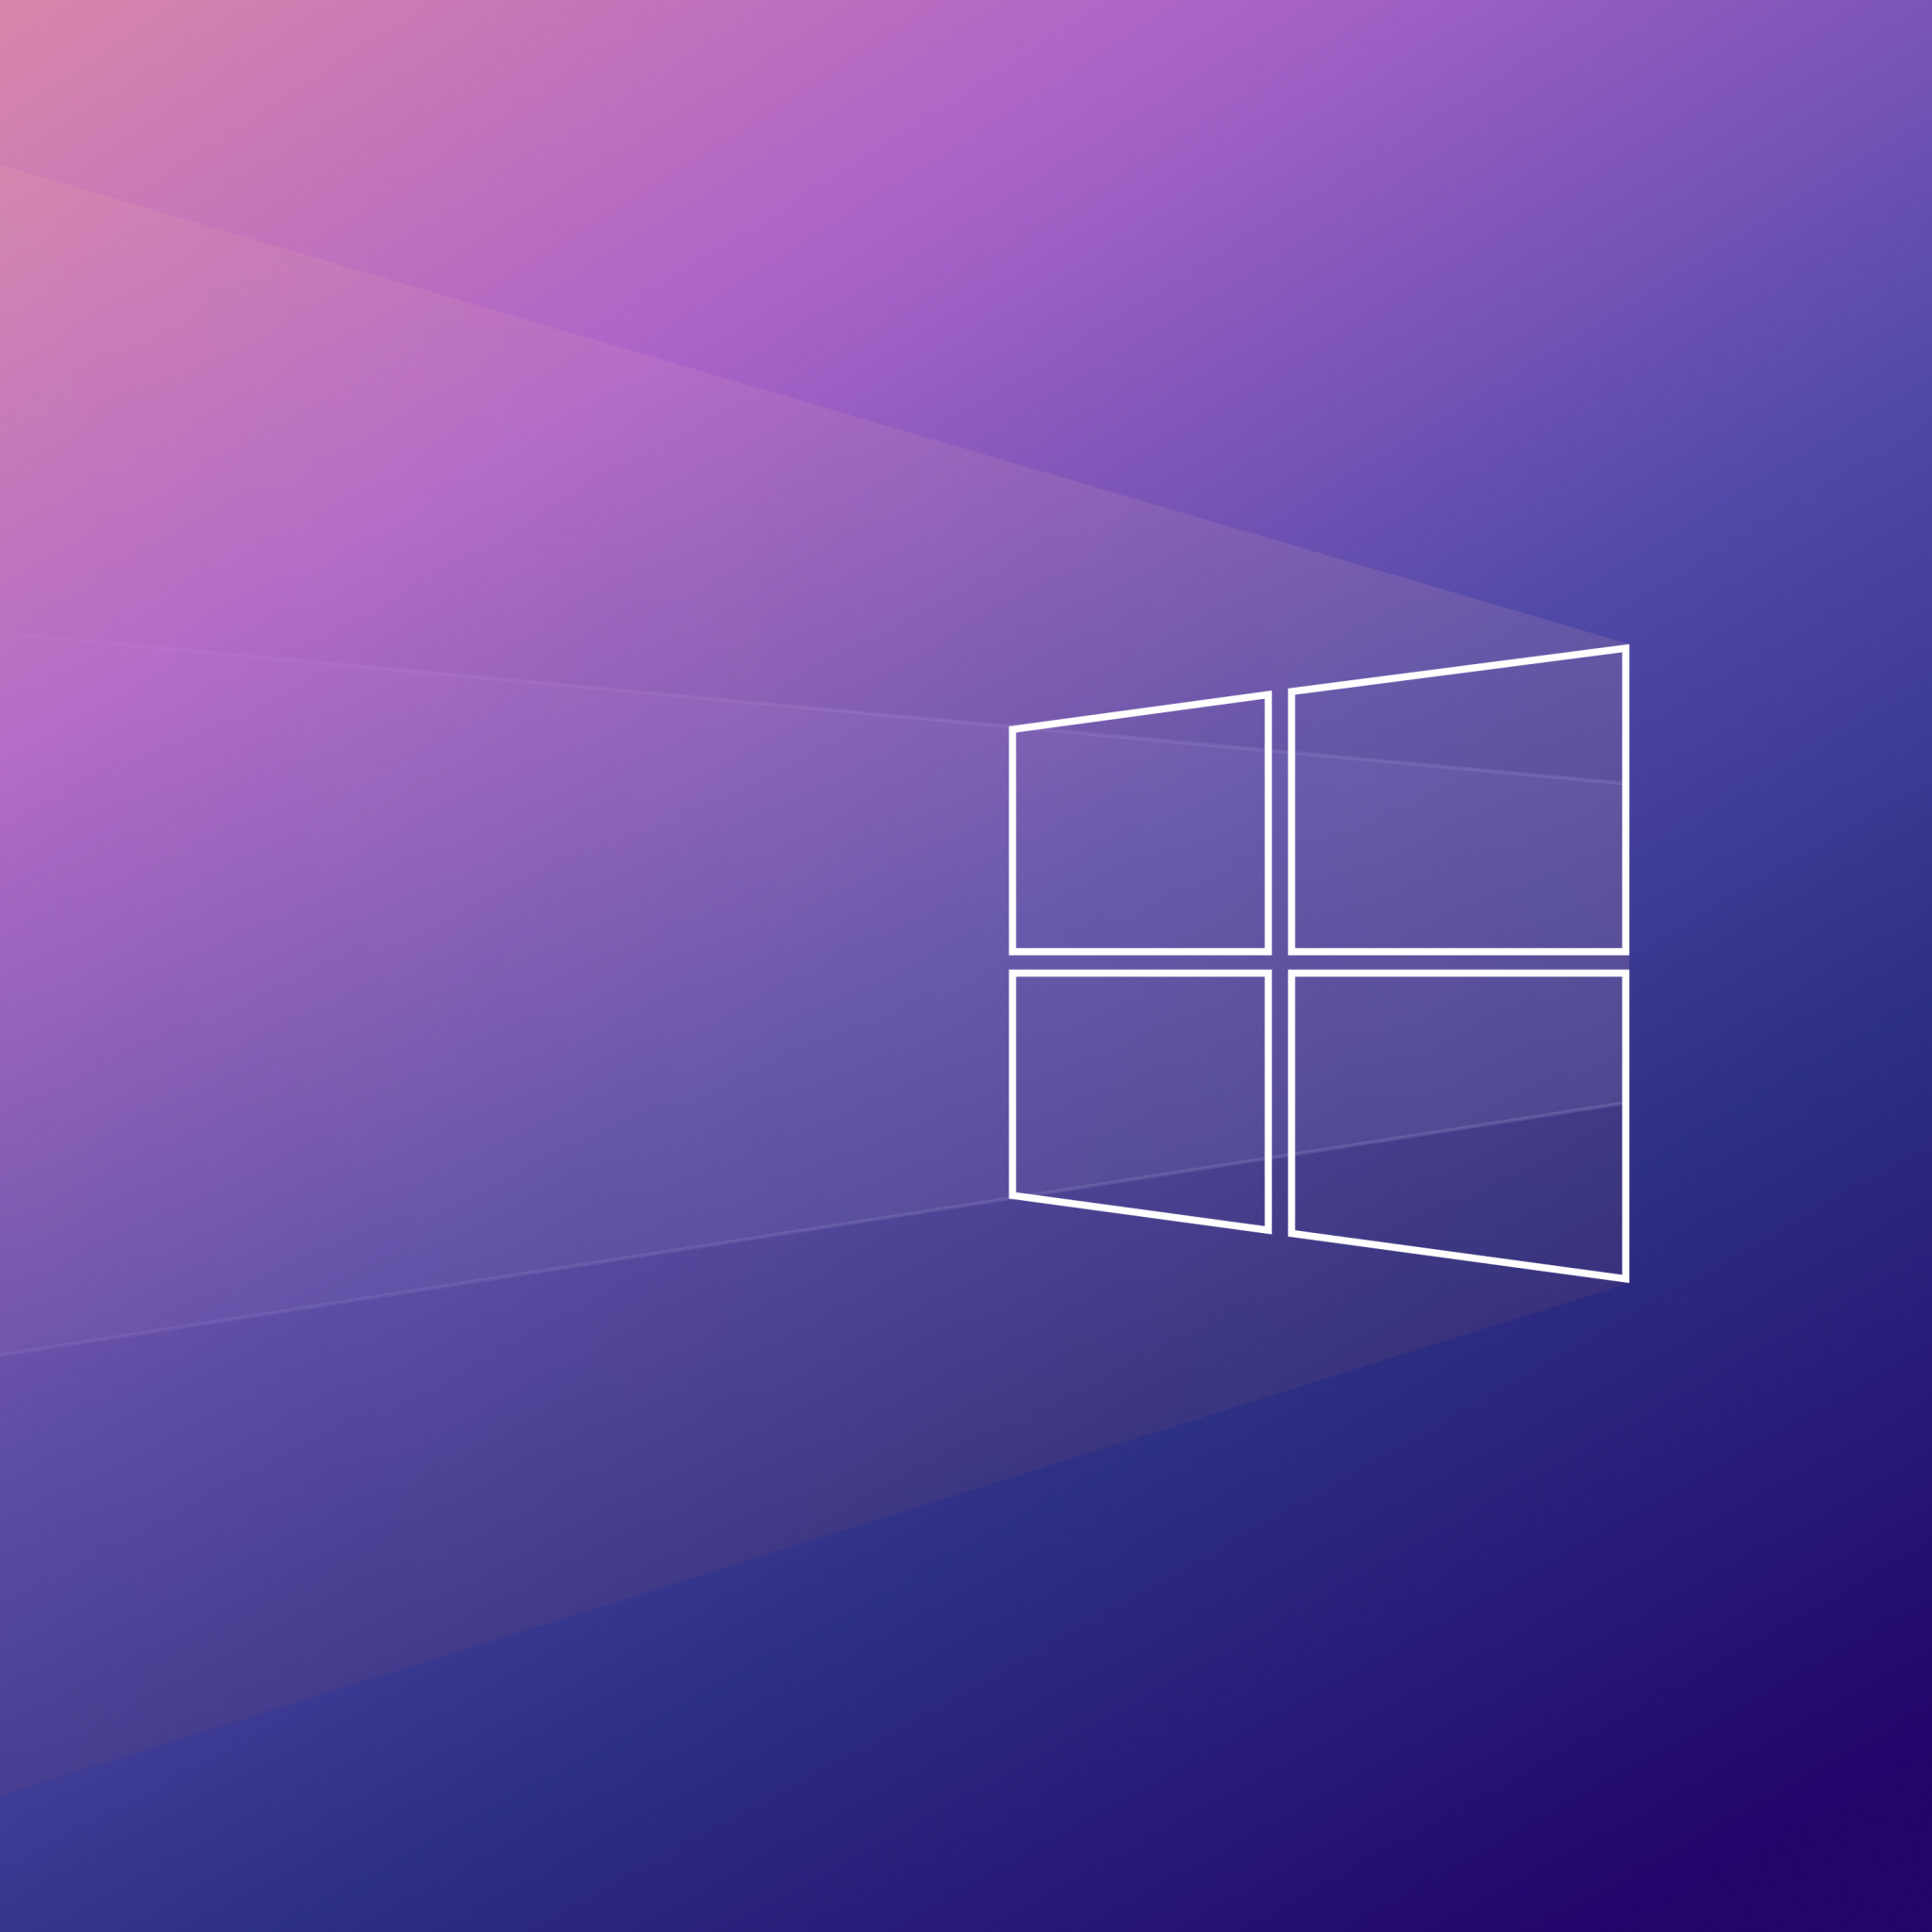 Để làm cho máy tính của bạn thật ấn tượng và đặc biệt, hình nền Windows 10 là một lựa chọn hoàn hảo. Bạn có thể tùy chọn theo sở thích của mình, từ những hình ảnh trừu tượng đến những bức ảnh thiên nhiên đẹp mắt. Với Windows 10, bạn sẽ không chỉ có một hệ điều hành tuyệt vời, mà còn có một hình nền đặc biệt và lôi cuốn.